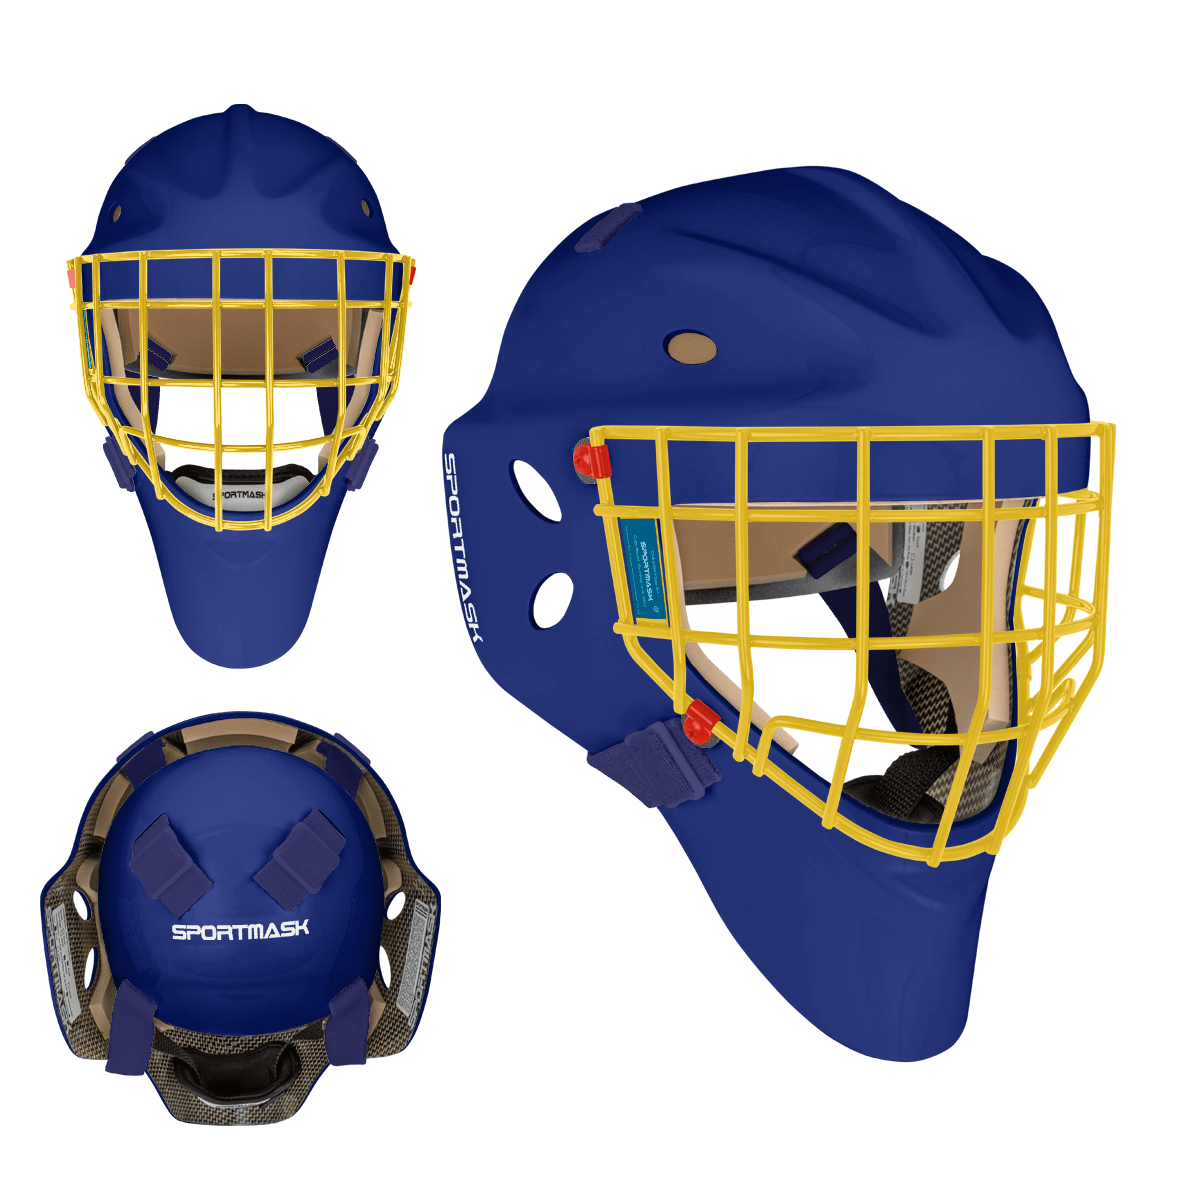 Sportmask Pro 3i Non-Certified Goalie Mask - Custom Design - Senior St. Louis Inspiration